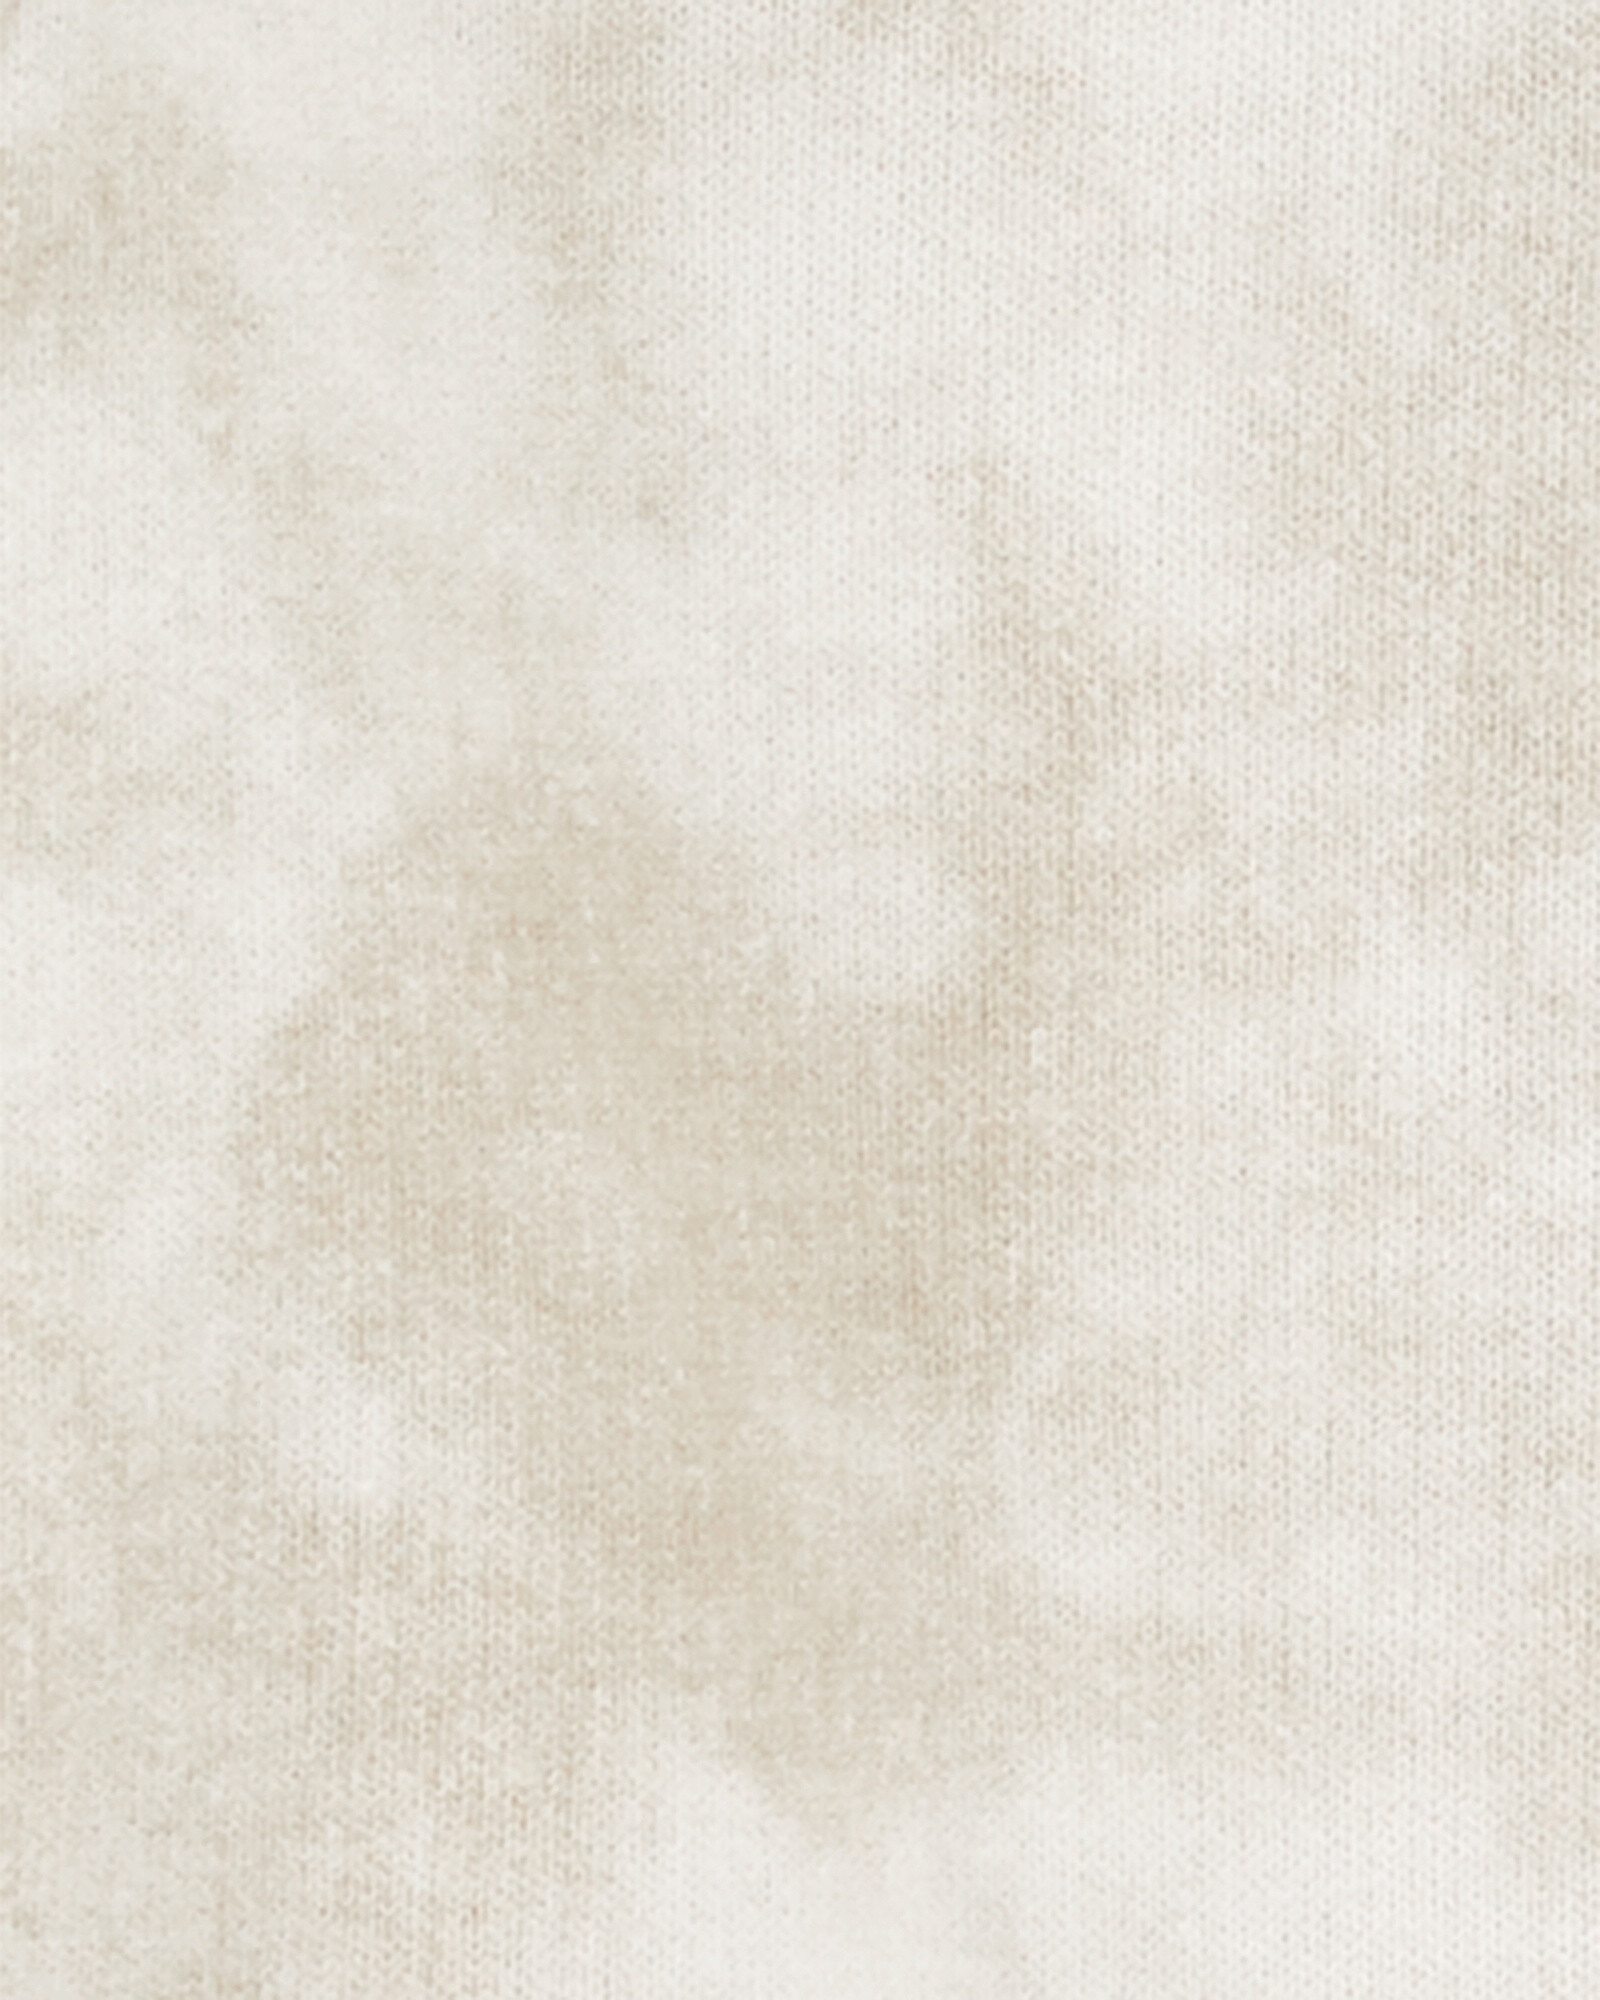 Campera de algodón con capucha diseño tie-dye. Talles 0-24M Sin color